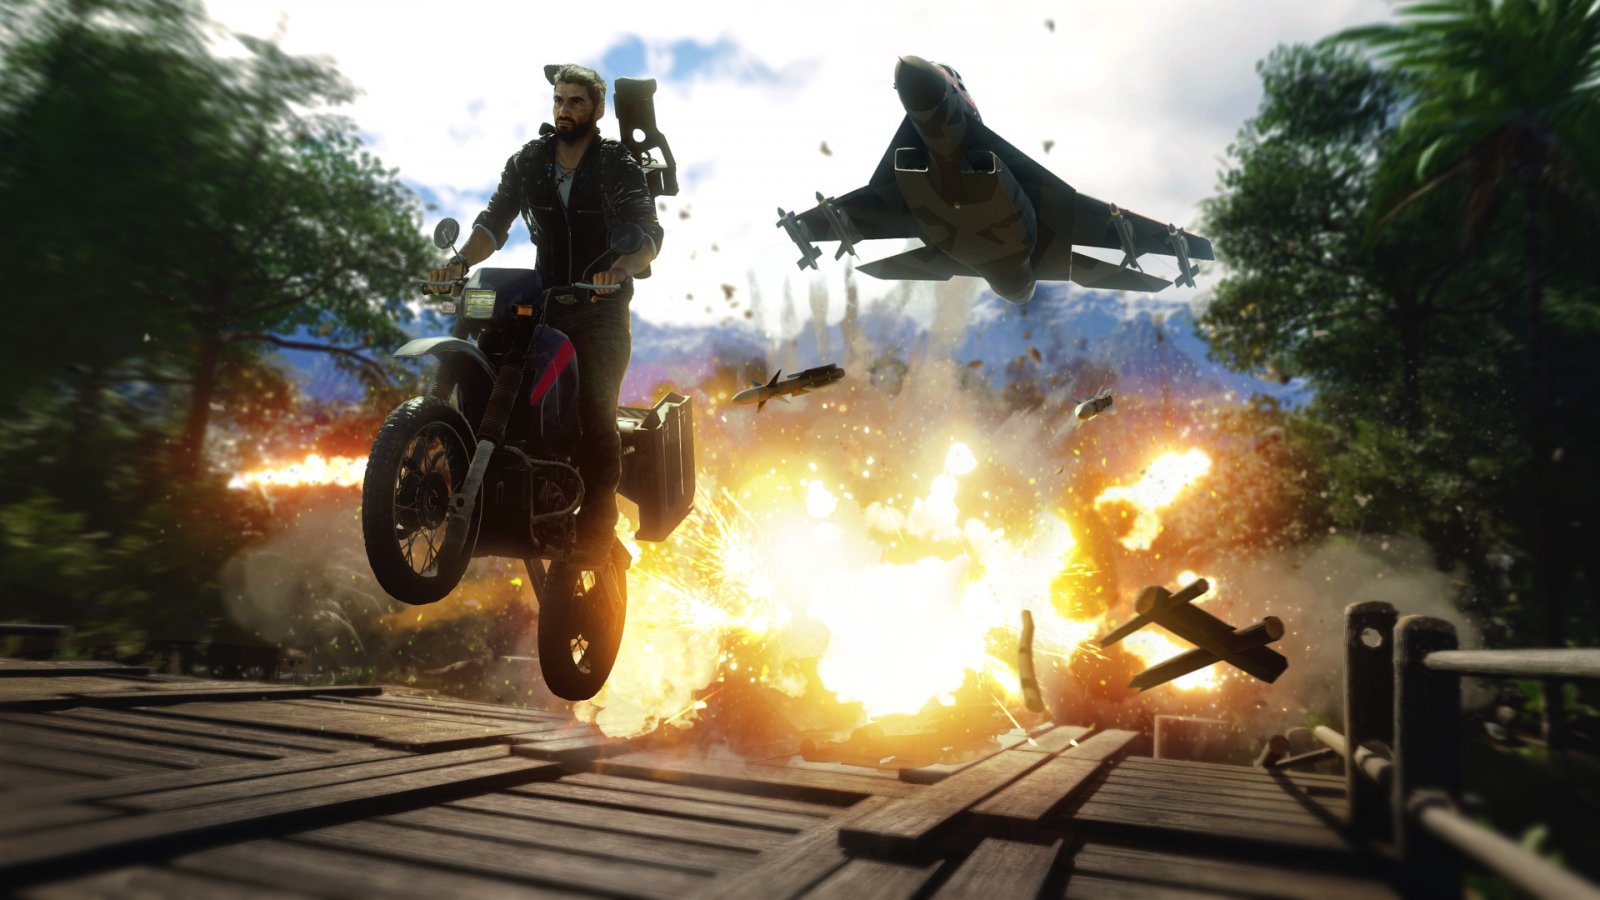 Il protagonista di Just Cause 4 salta con una moto mentre alle spalle vi è un'esplosione e un aereo